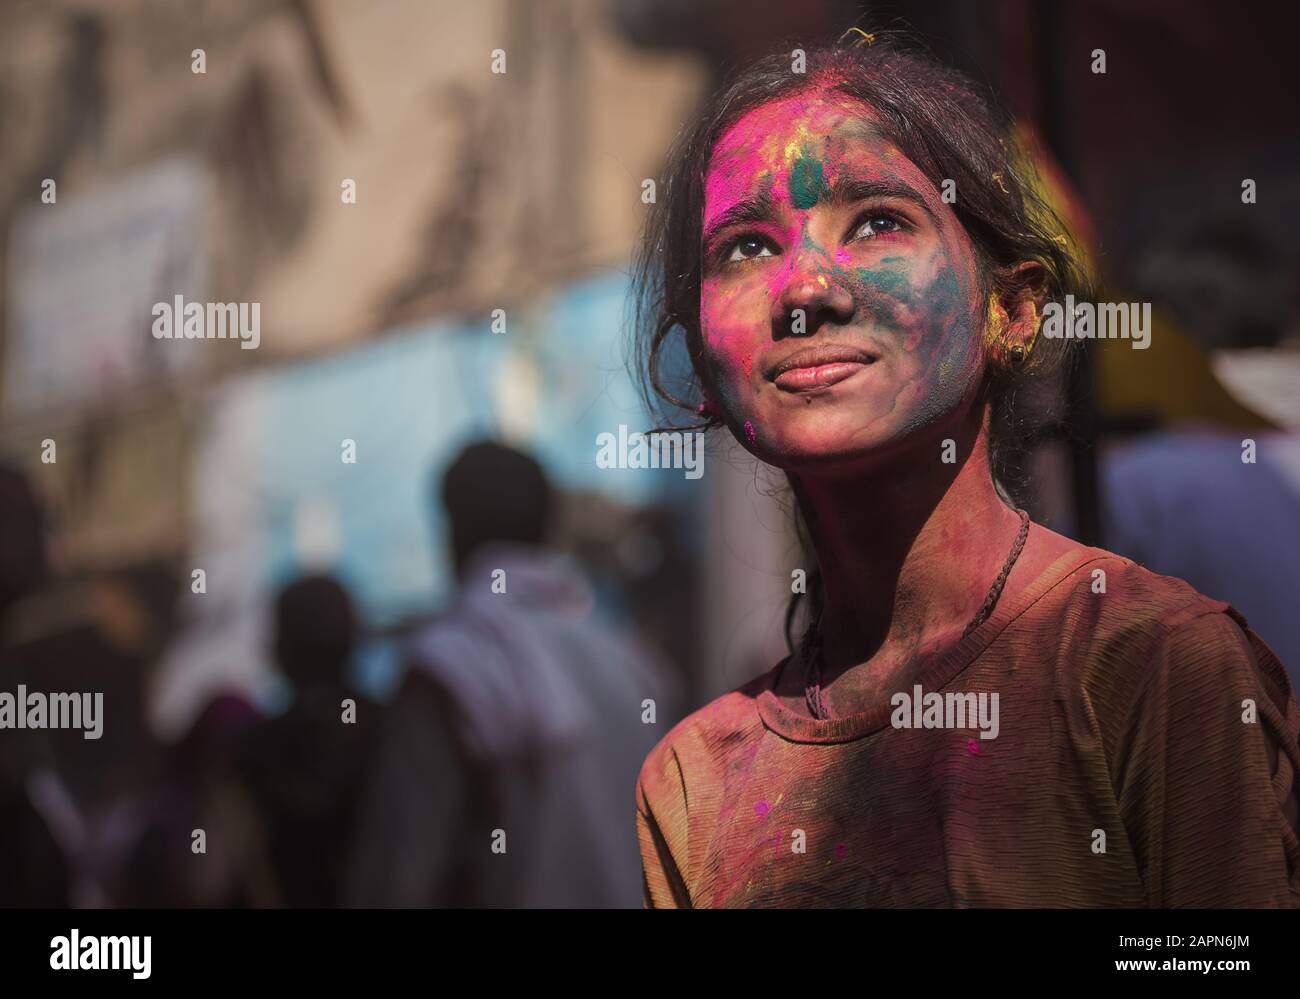 Mathura, INDIEN - Februar 25.2018: Ein indisches Mädchen, das mit Farben auf dem Gesicht verschmiert wurde, posiert für ein Foto während der Holi-Festfeier in Math Stockfoto